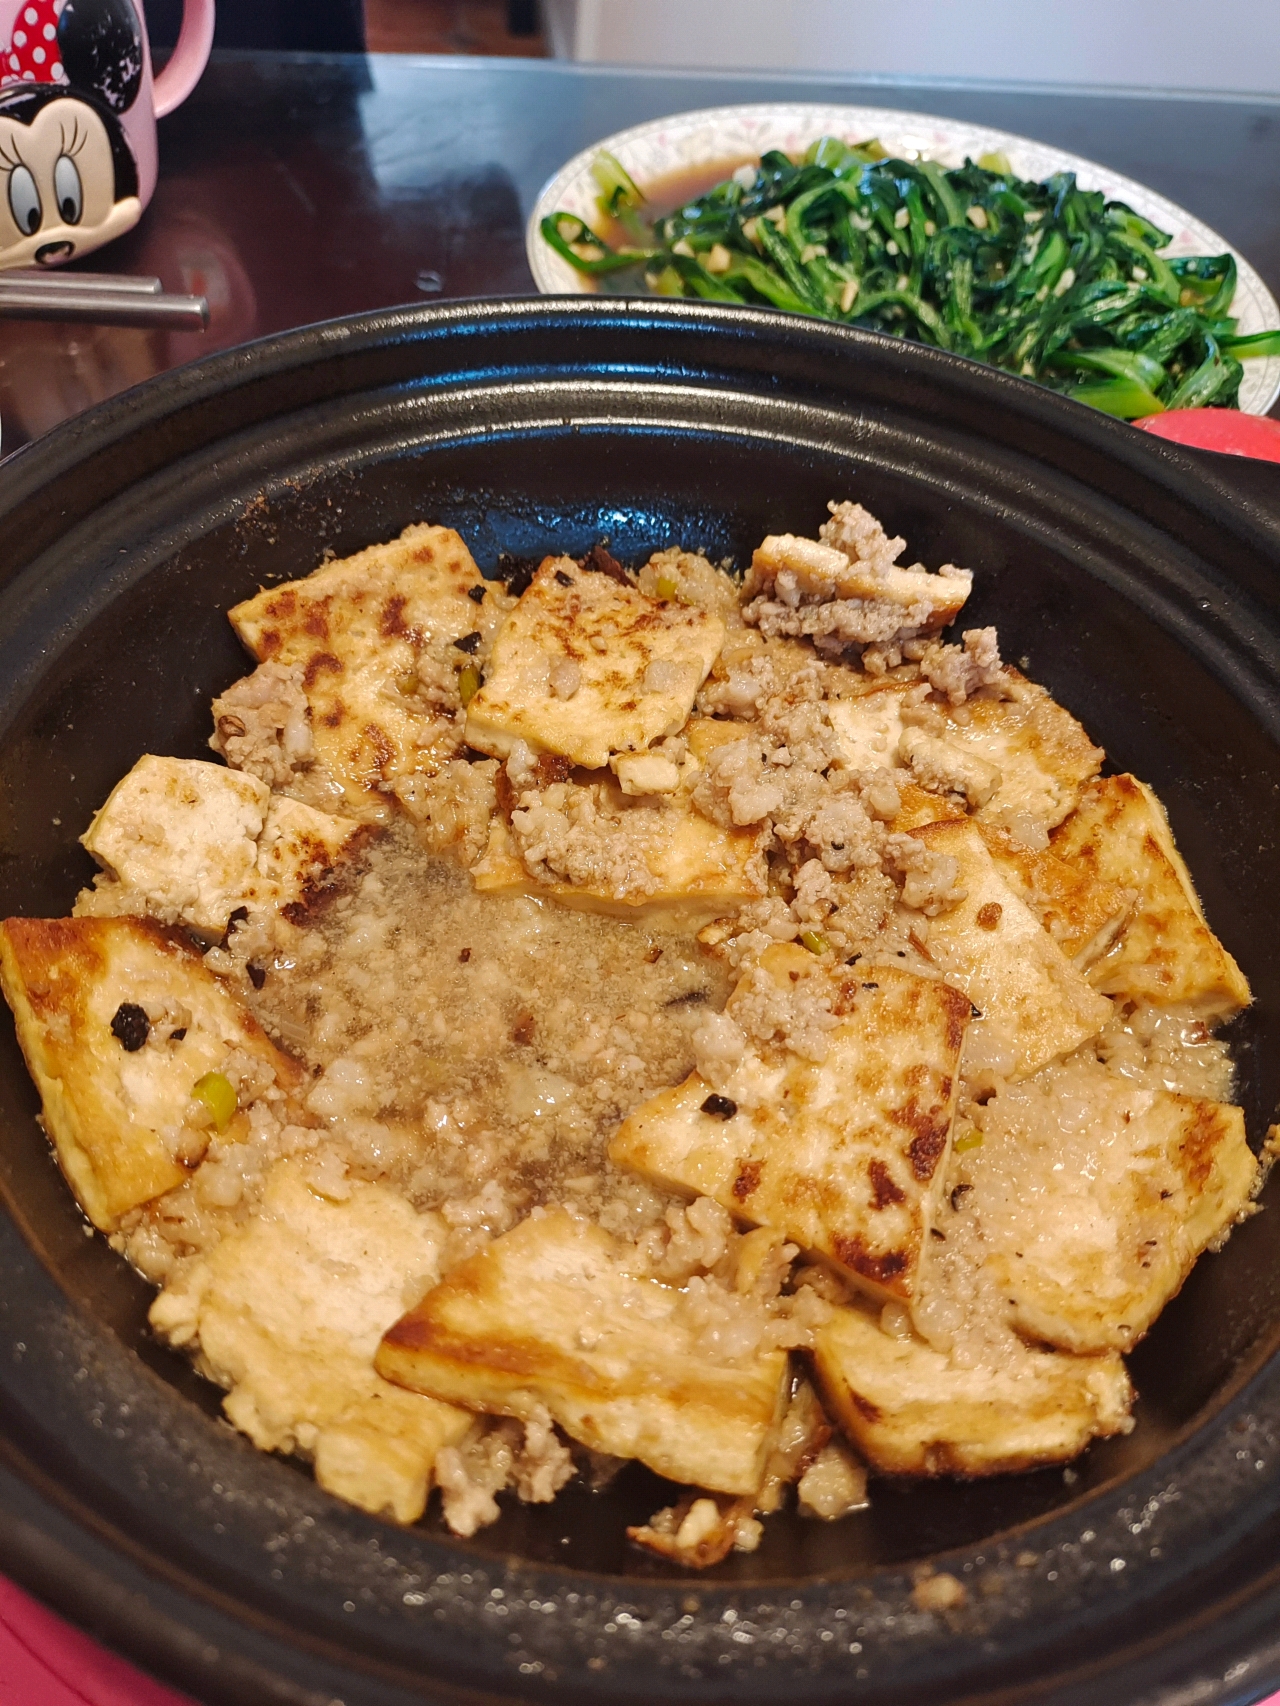 砂锅豆腐煲